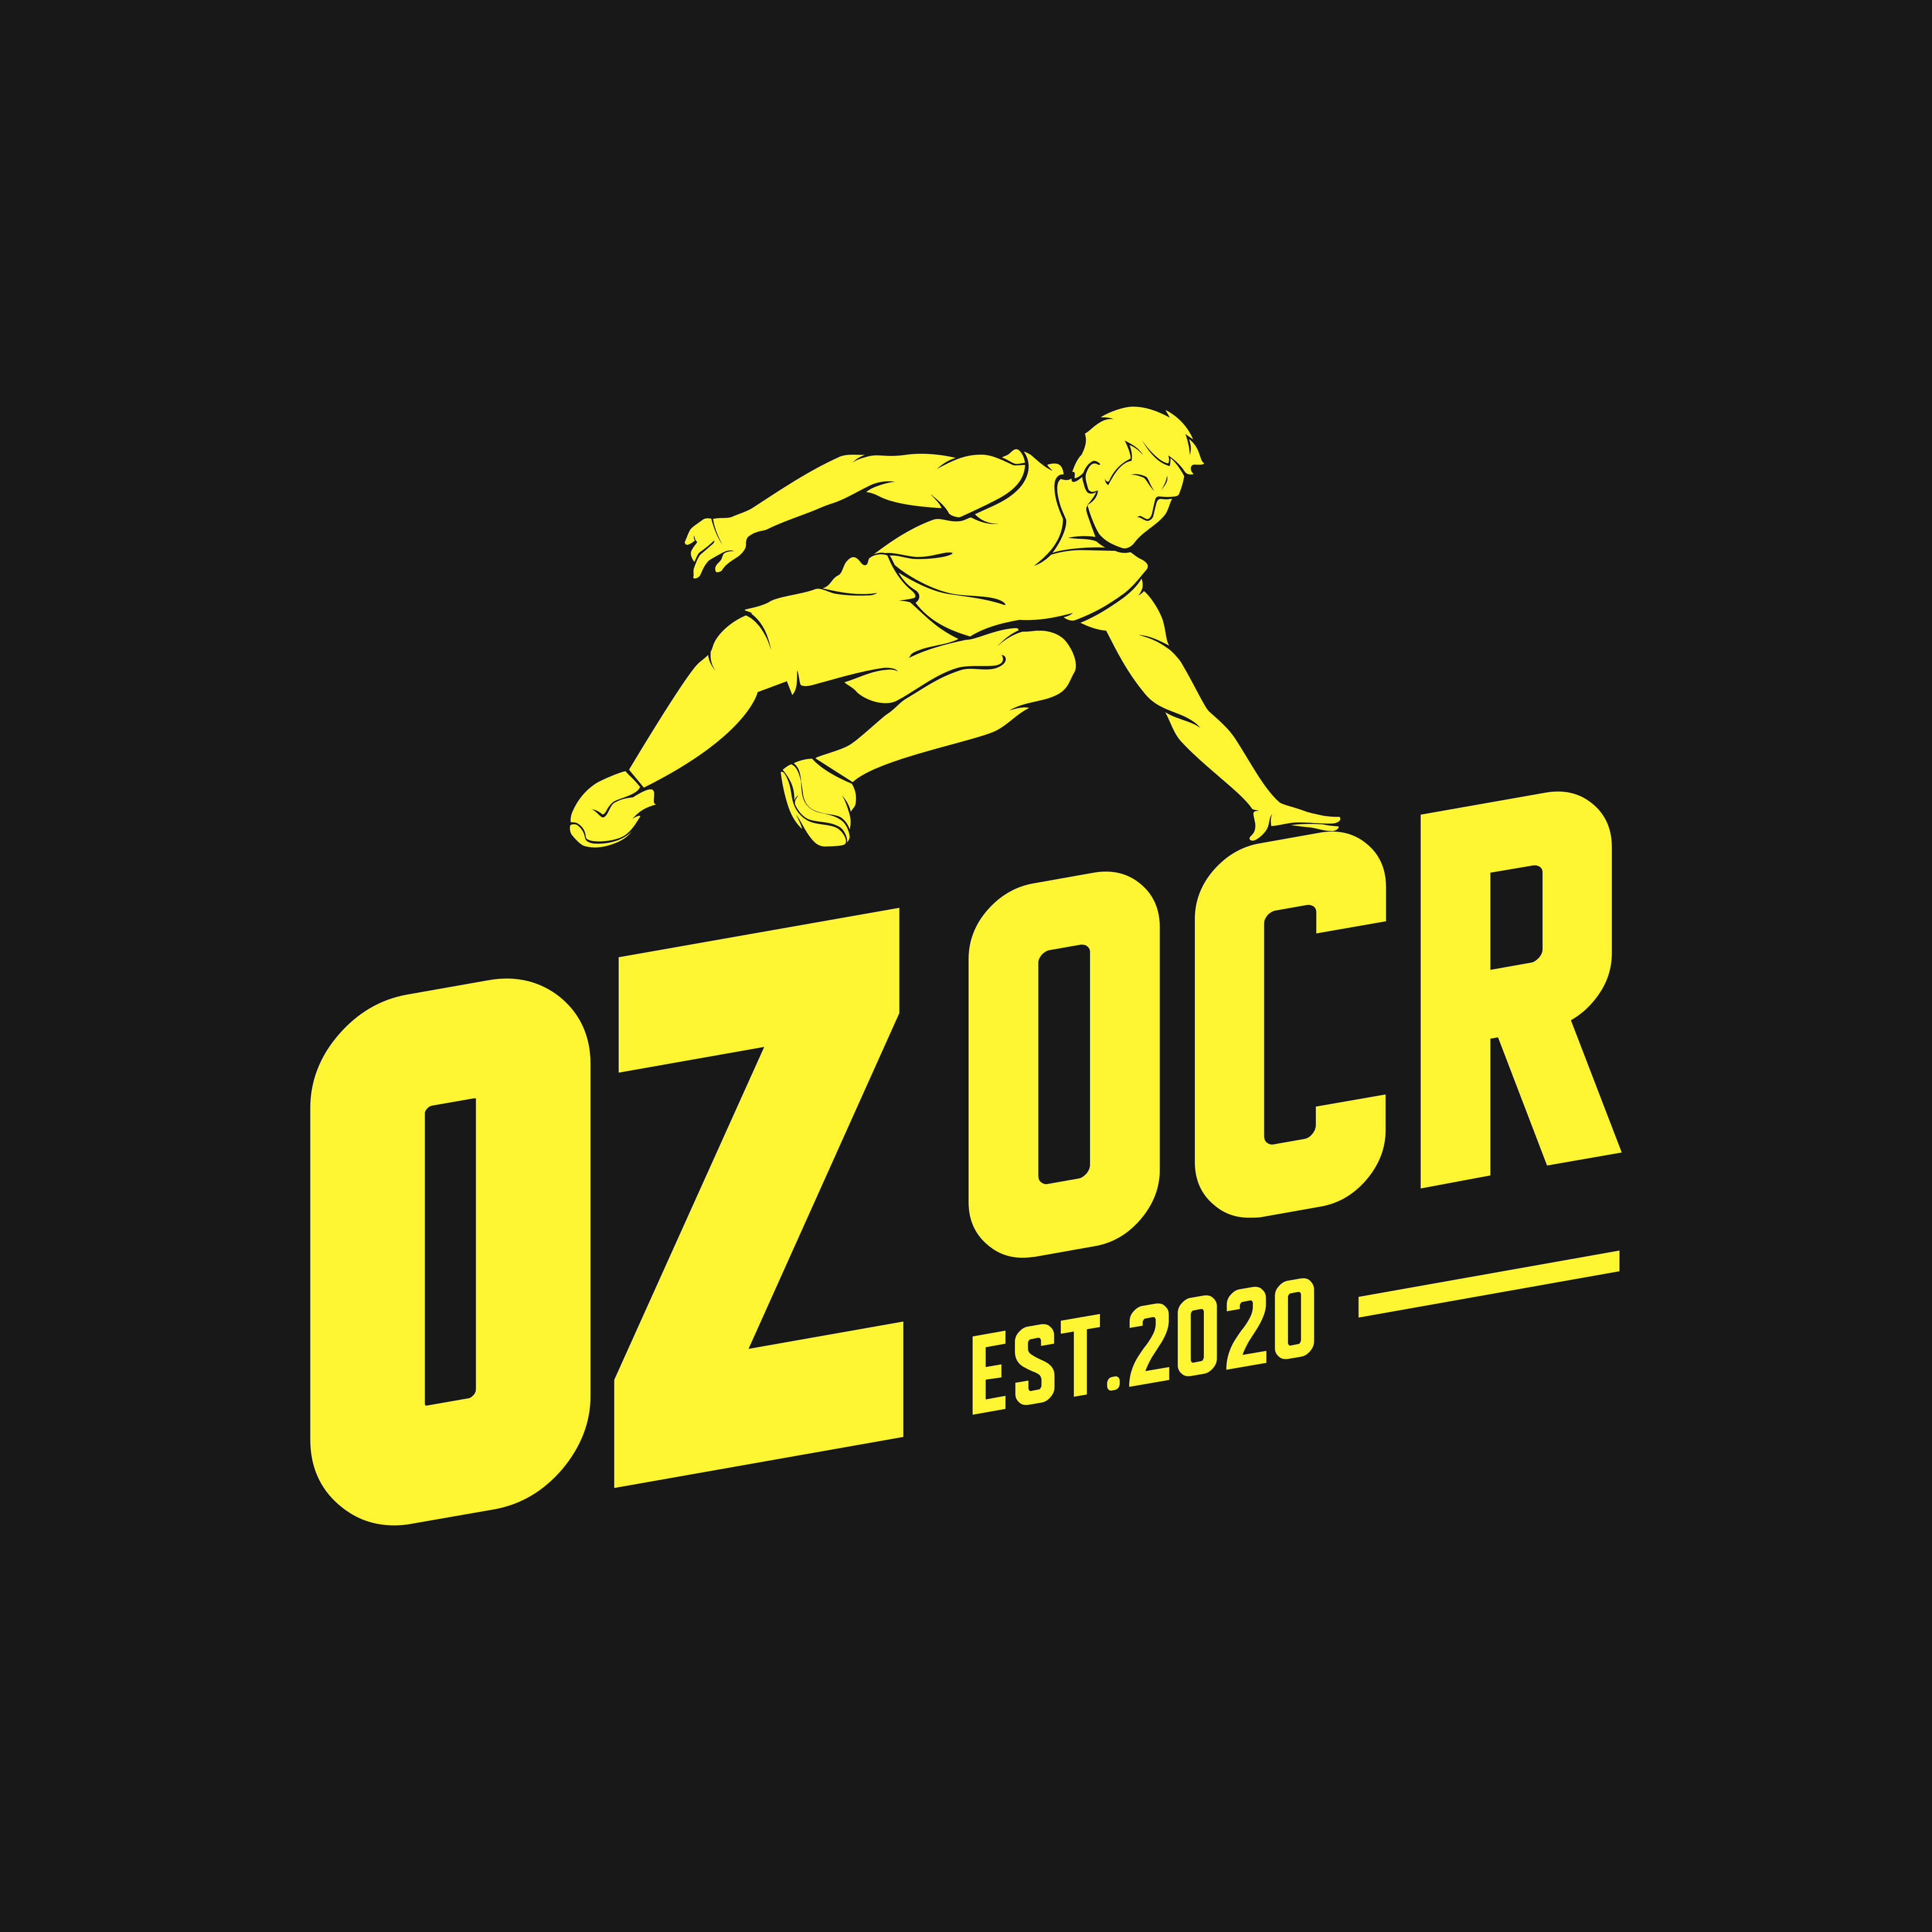 Гонка с препятствиями OZ OCR RACE